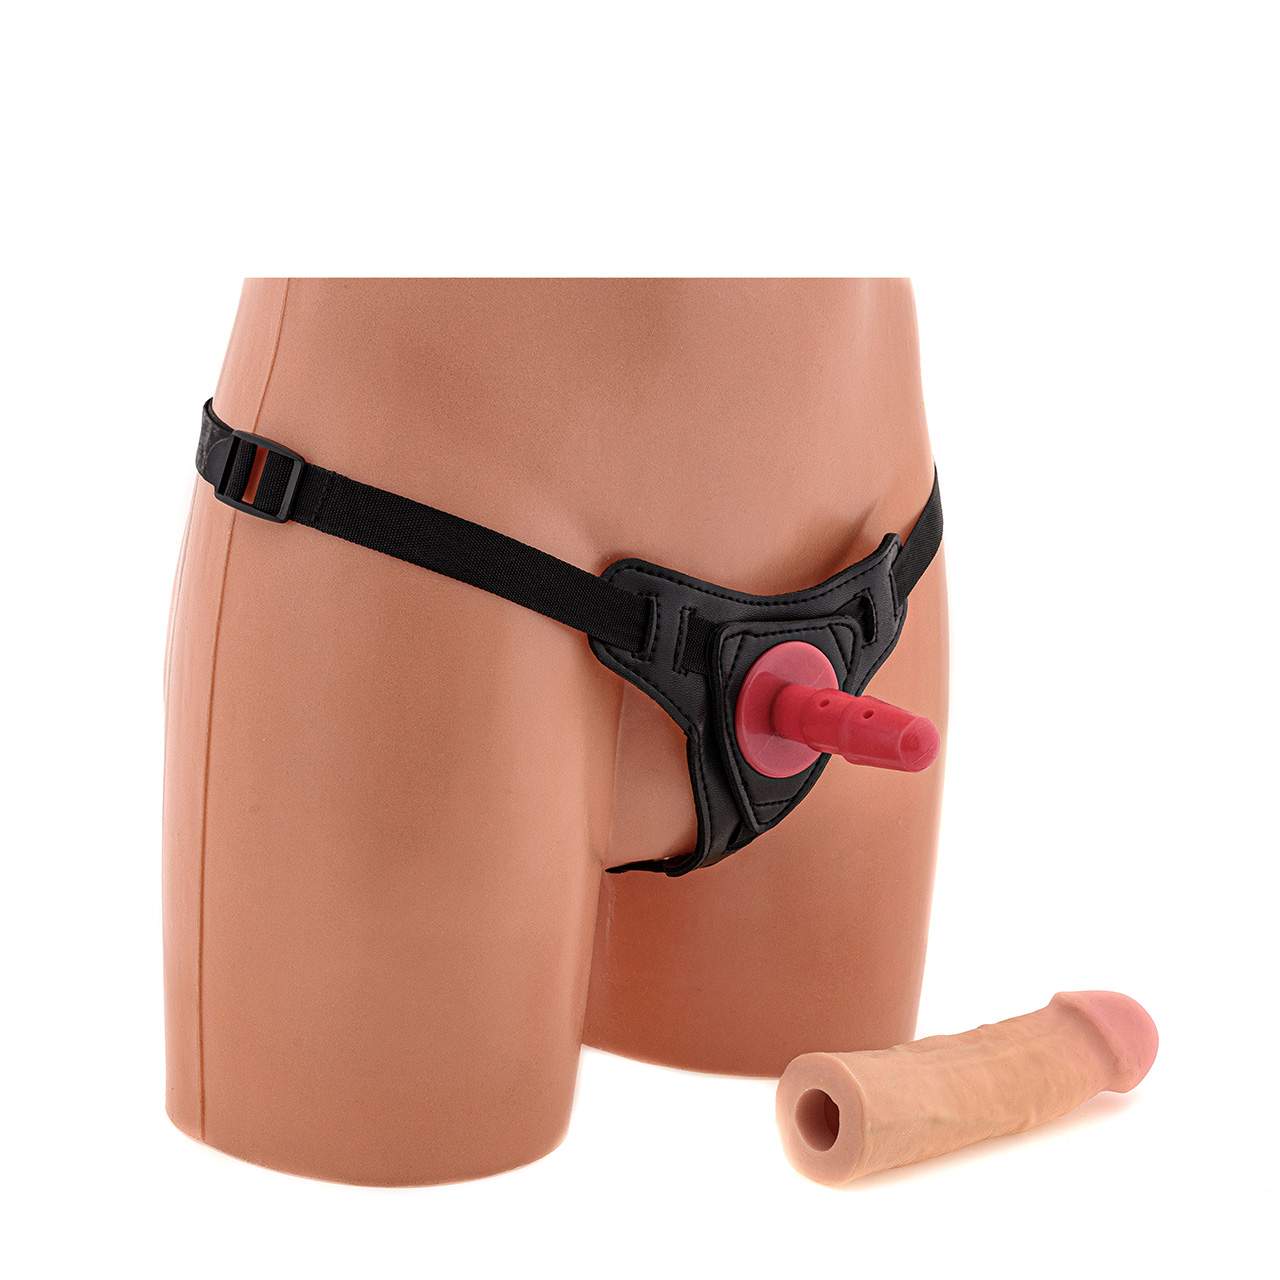 Cielista realistyczna proteza penisa dla kobiet wykonana z cyberskóry – 17,5 cm